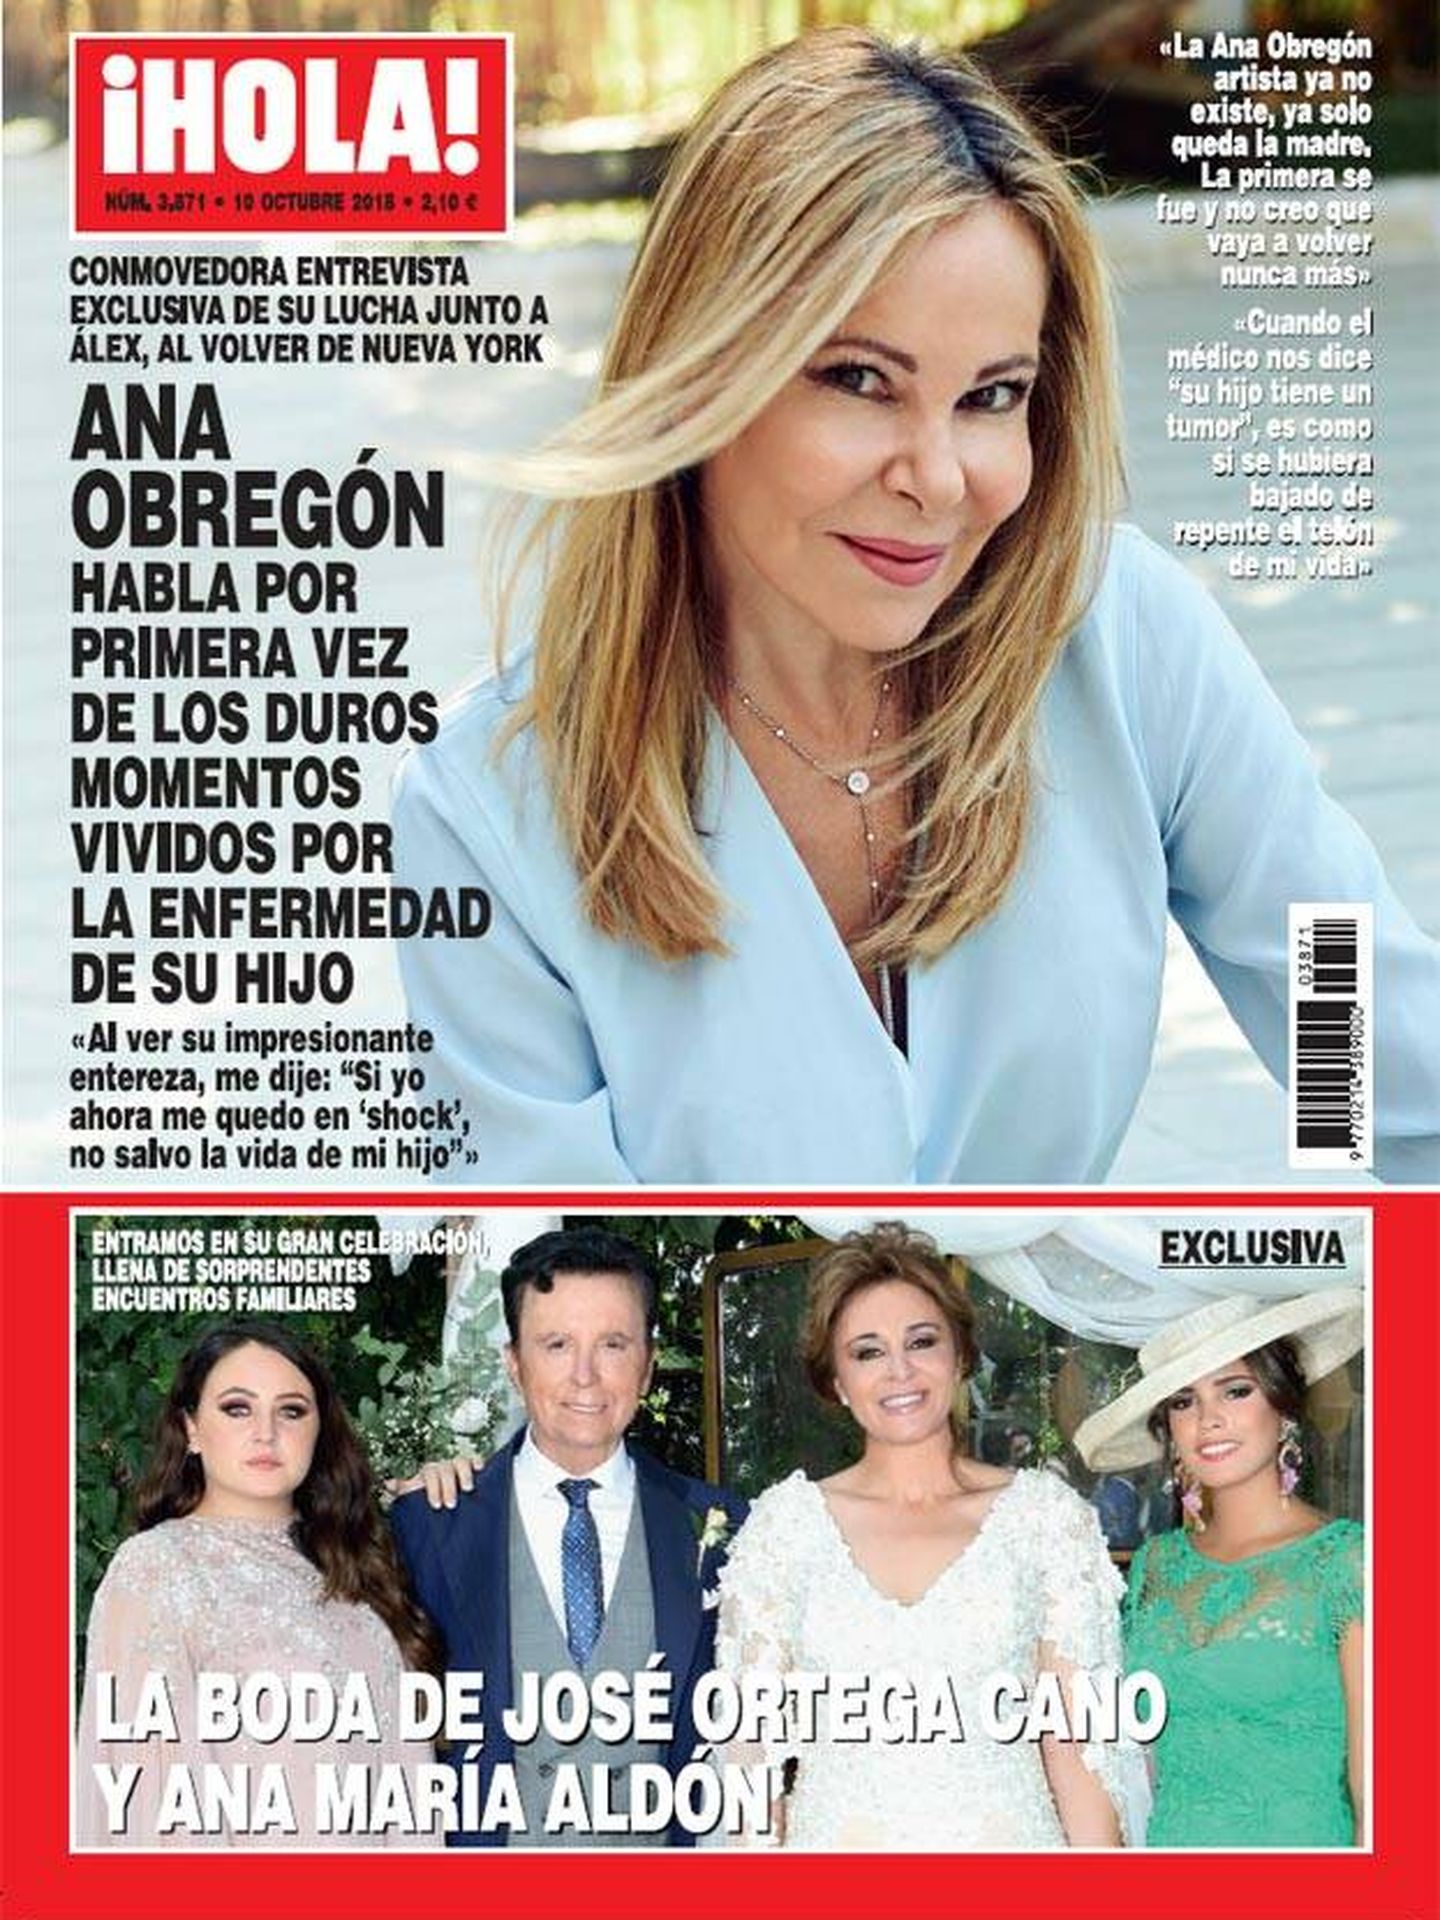 Portada de la revista '¡Hola!', a la que Ortega Cano y Ana María Aldón dieron la exclusiva de su boda.